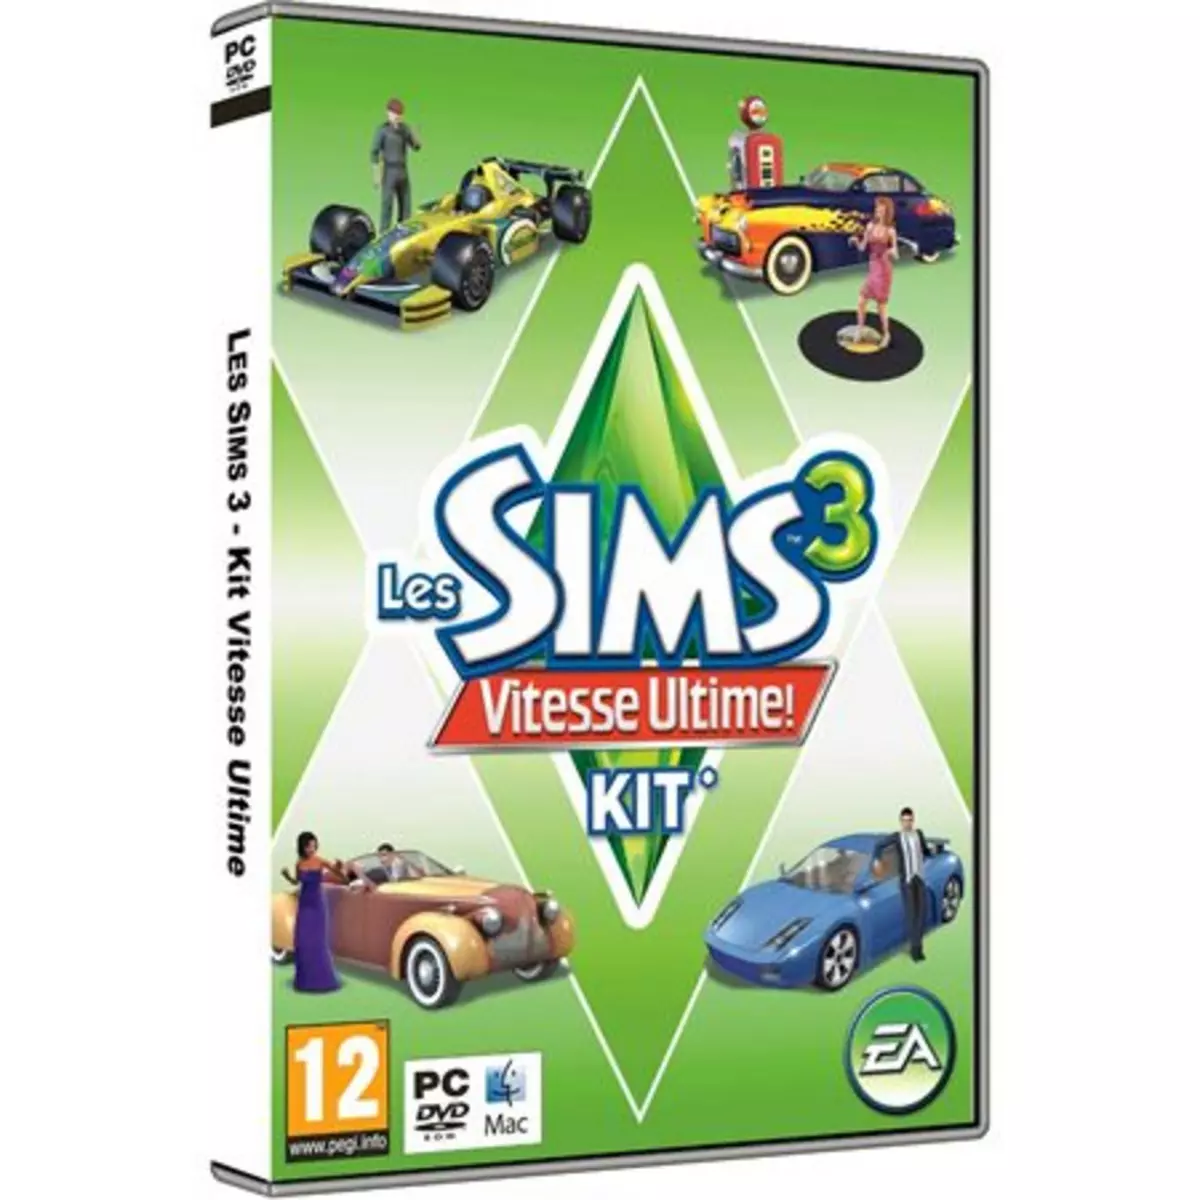 Les Sims 3 - Vitesse Ultime !